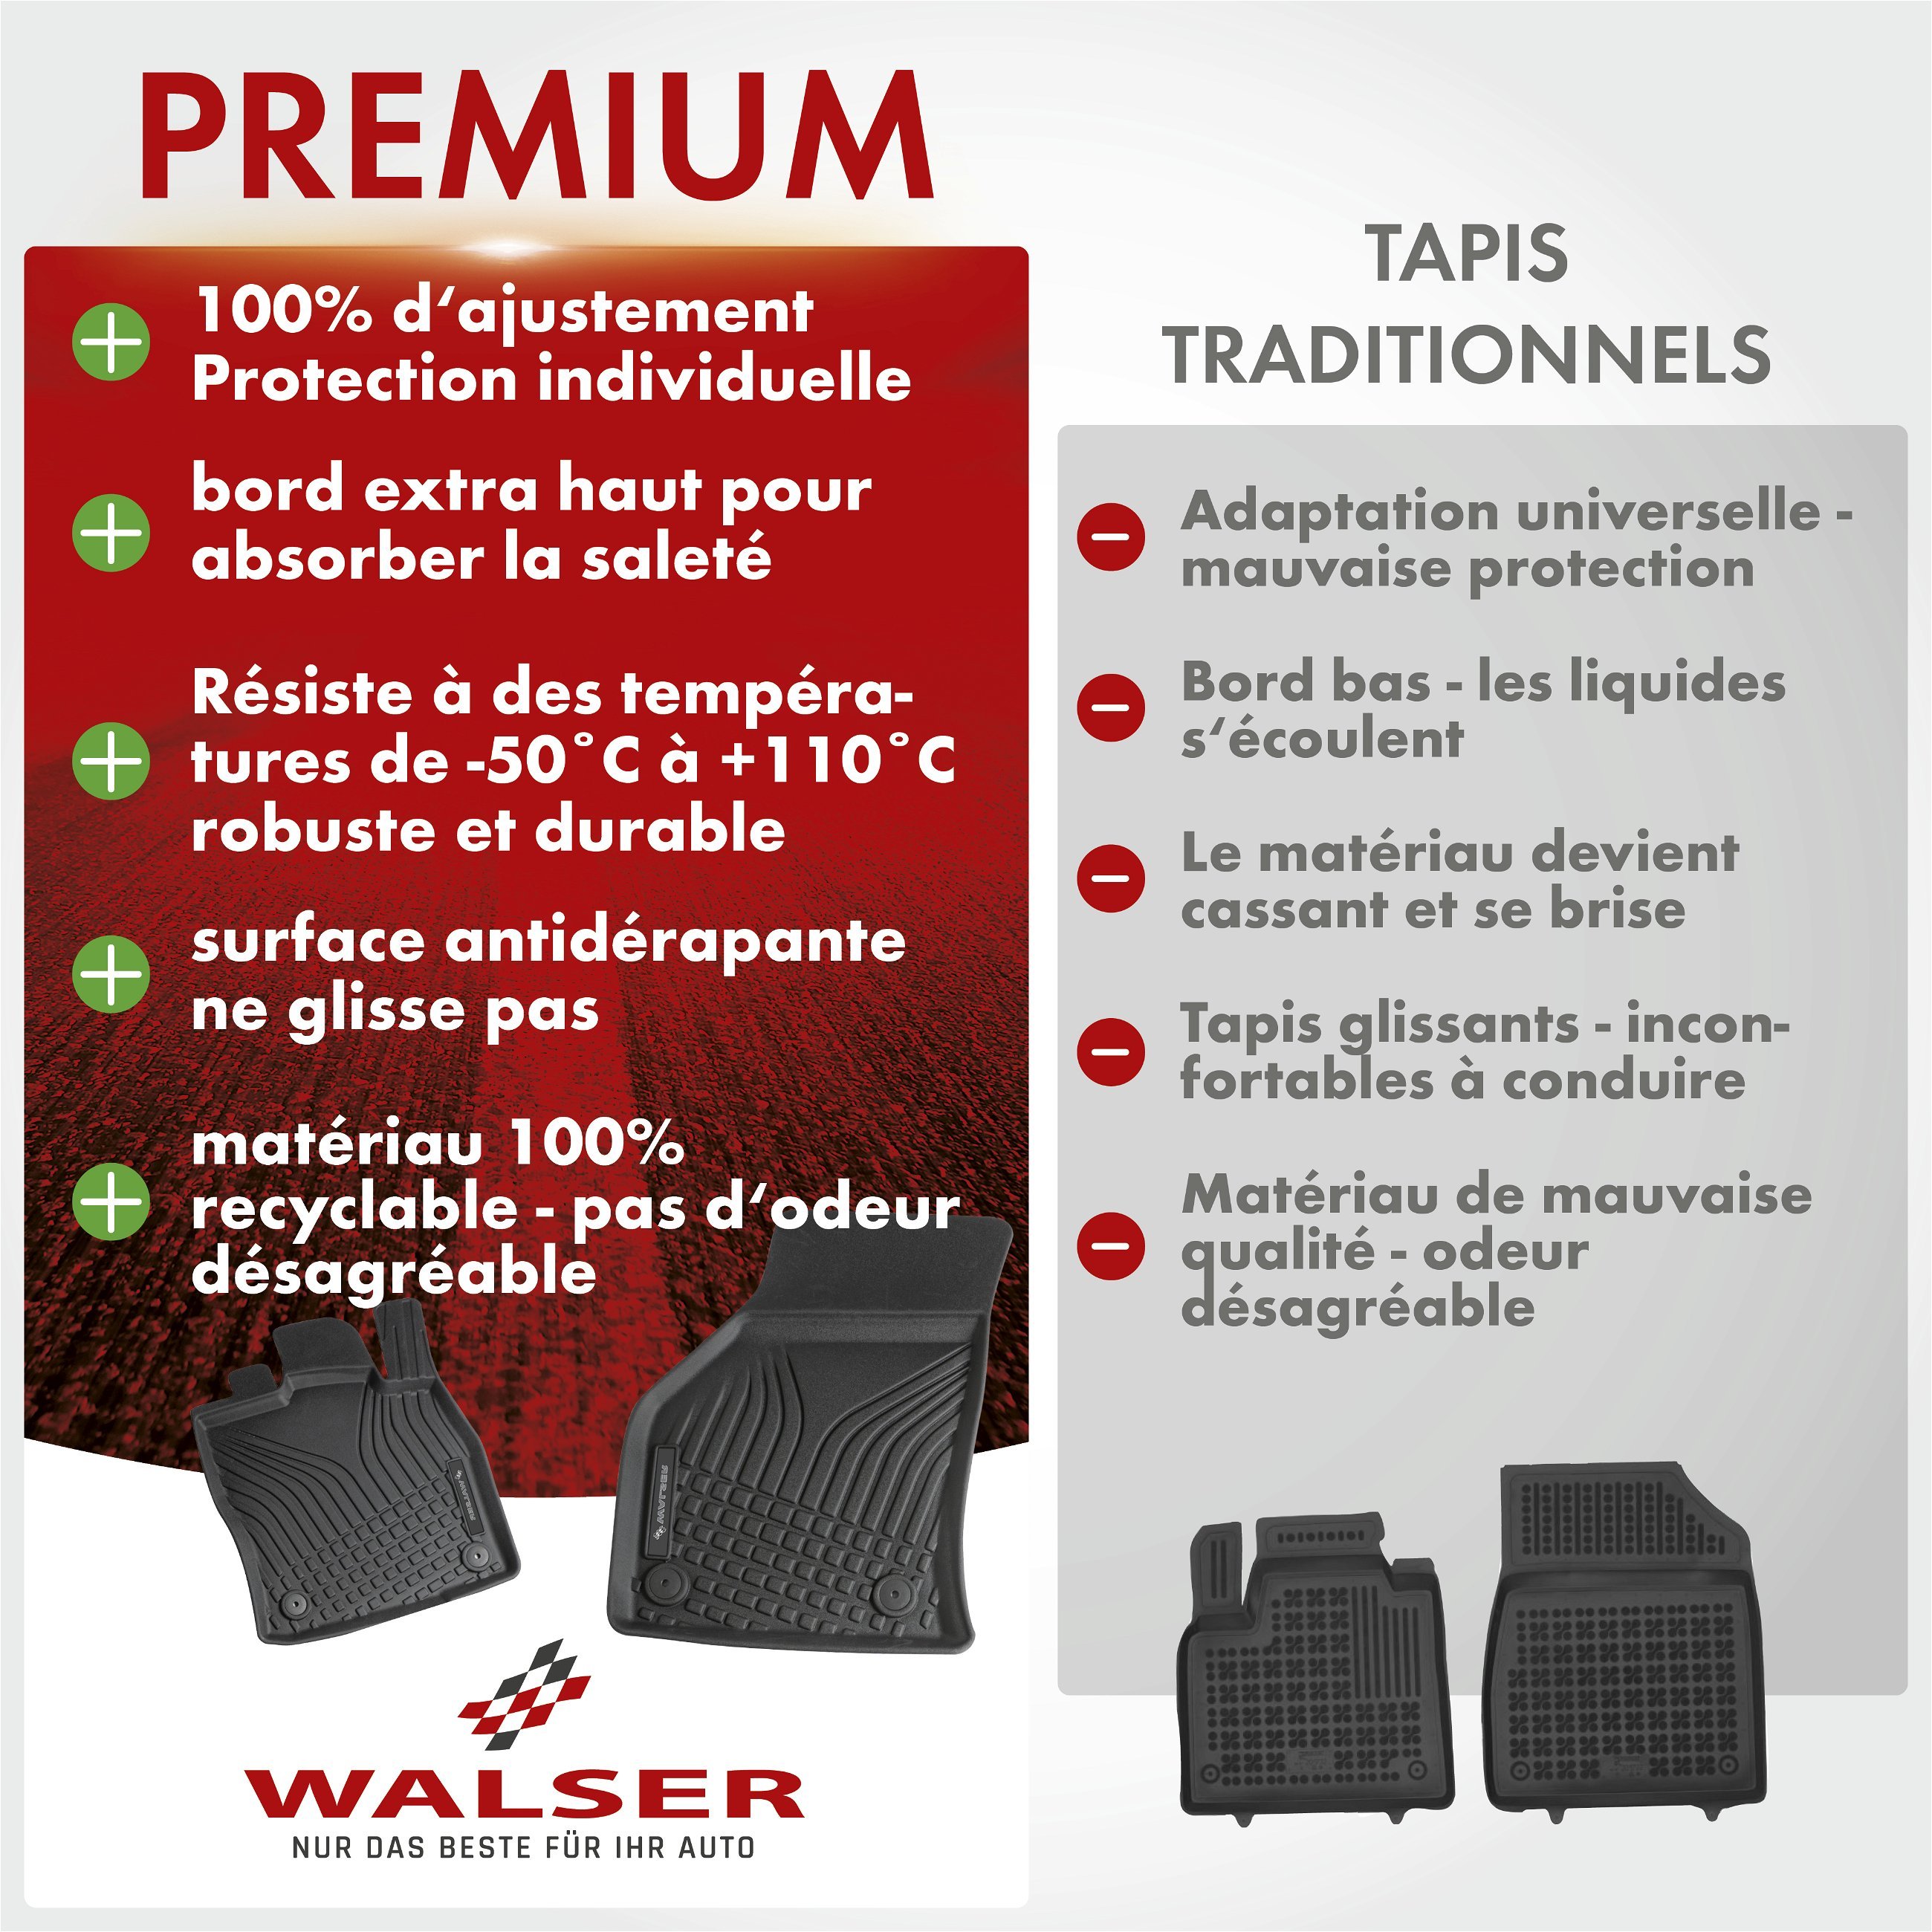 Premium Tapis en caoutchouc Roadmaster pour VW T5 04/2003-08/2015, T6 04/2015-2019